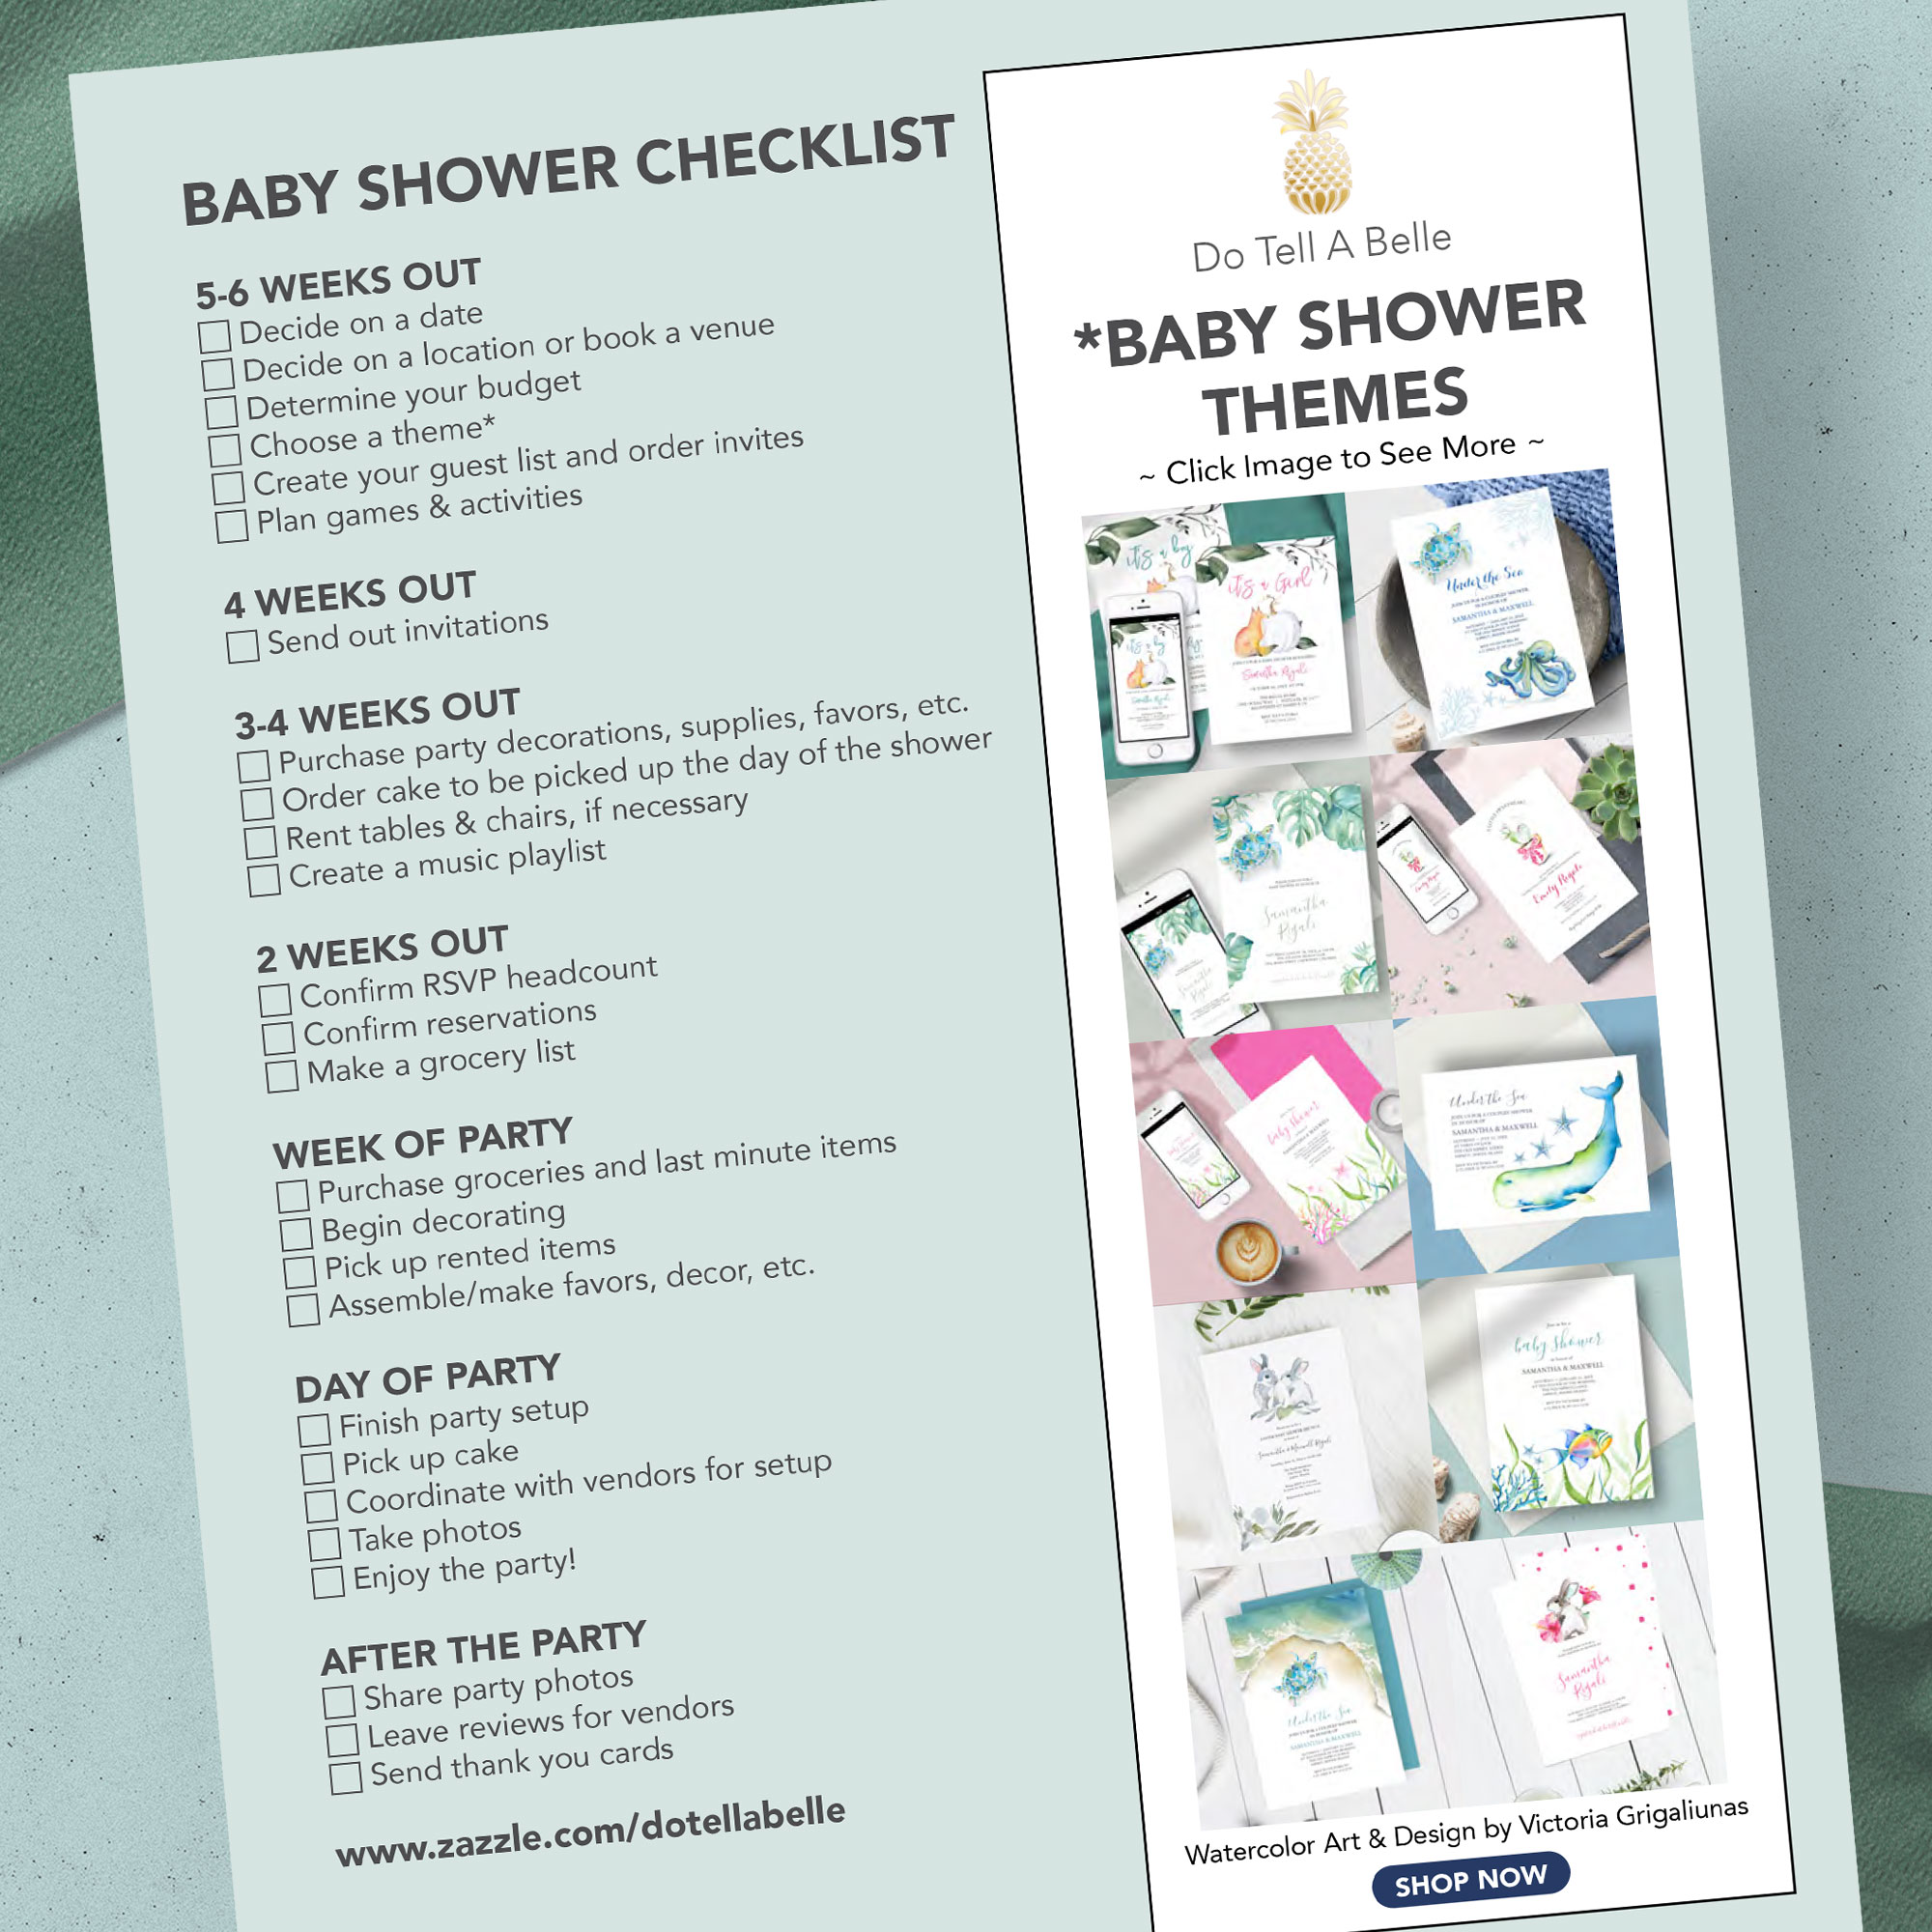 Baby shower checklist free download.